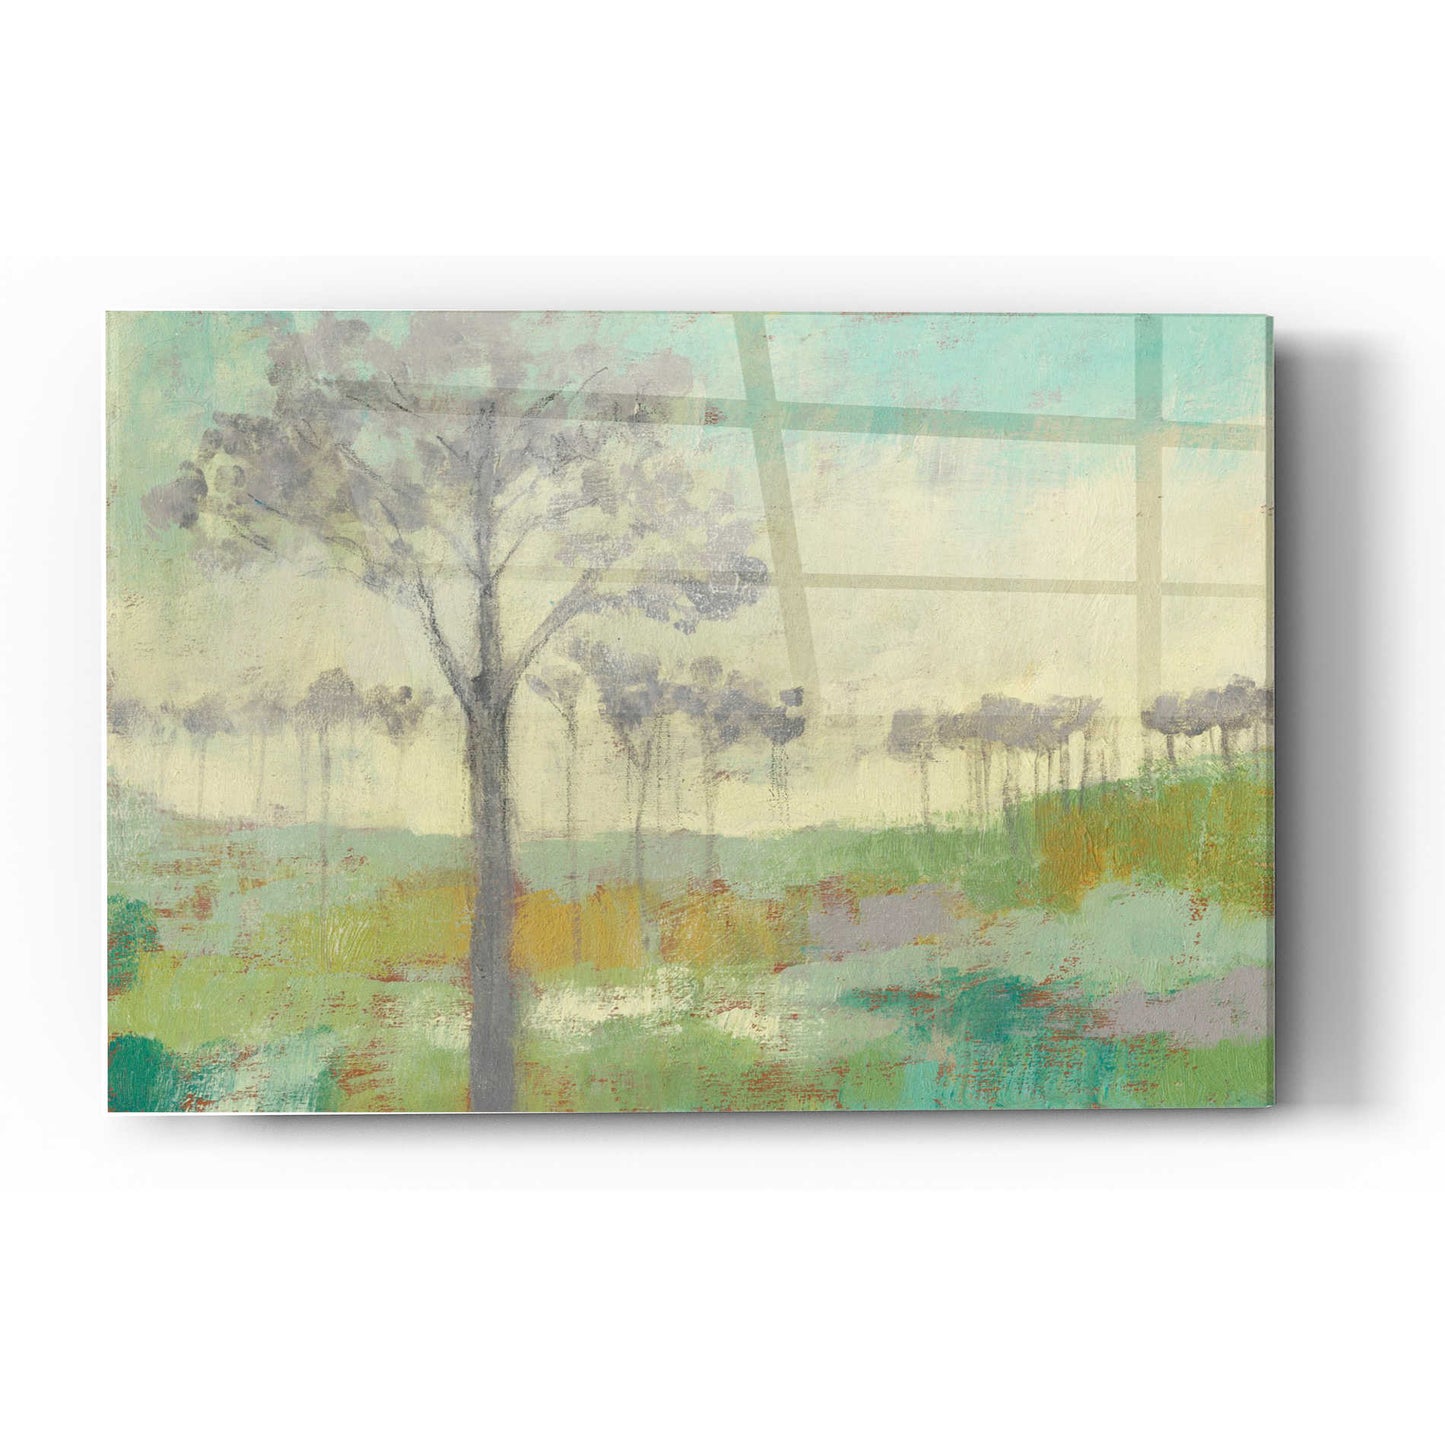 Epic Art 'Tree Stand II' by Jennifer Goldberger Acrylic Glass Wall Art,12x16